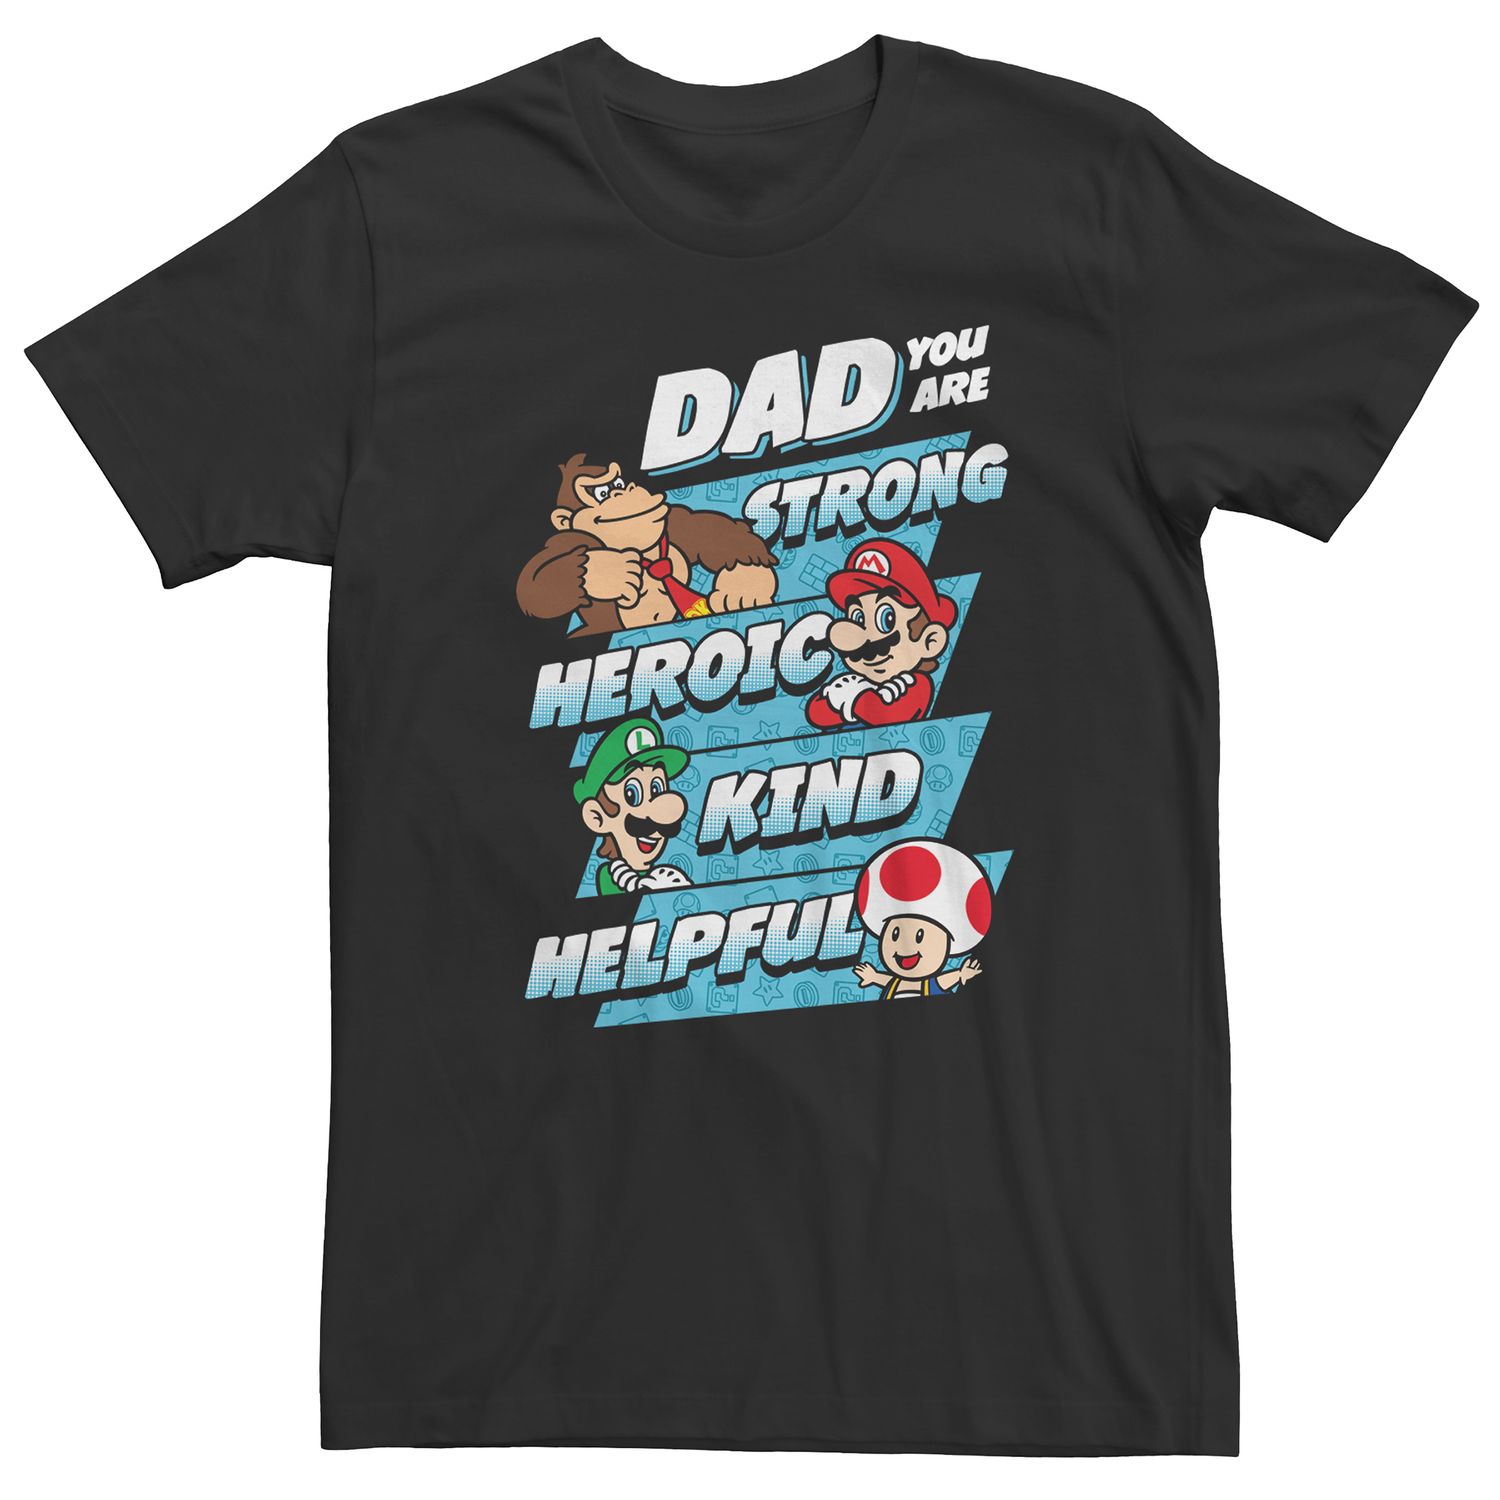 Мужская футболка для папы с персонажем Nintendo Licensed Character мужская футболка для папы game licensed character